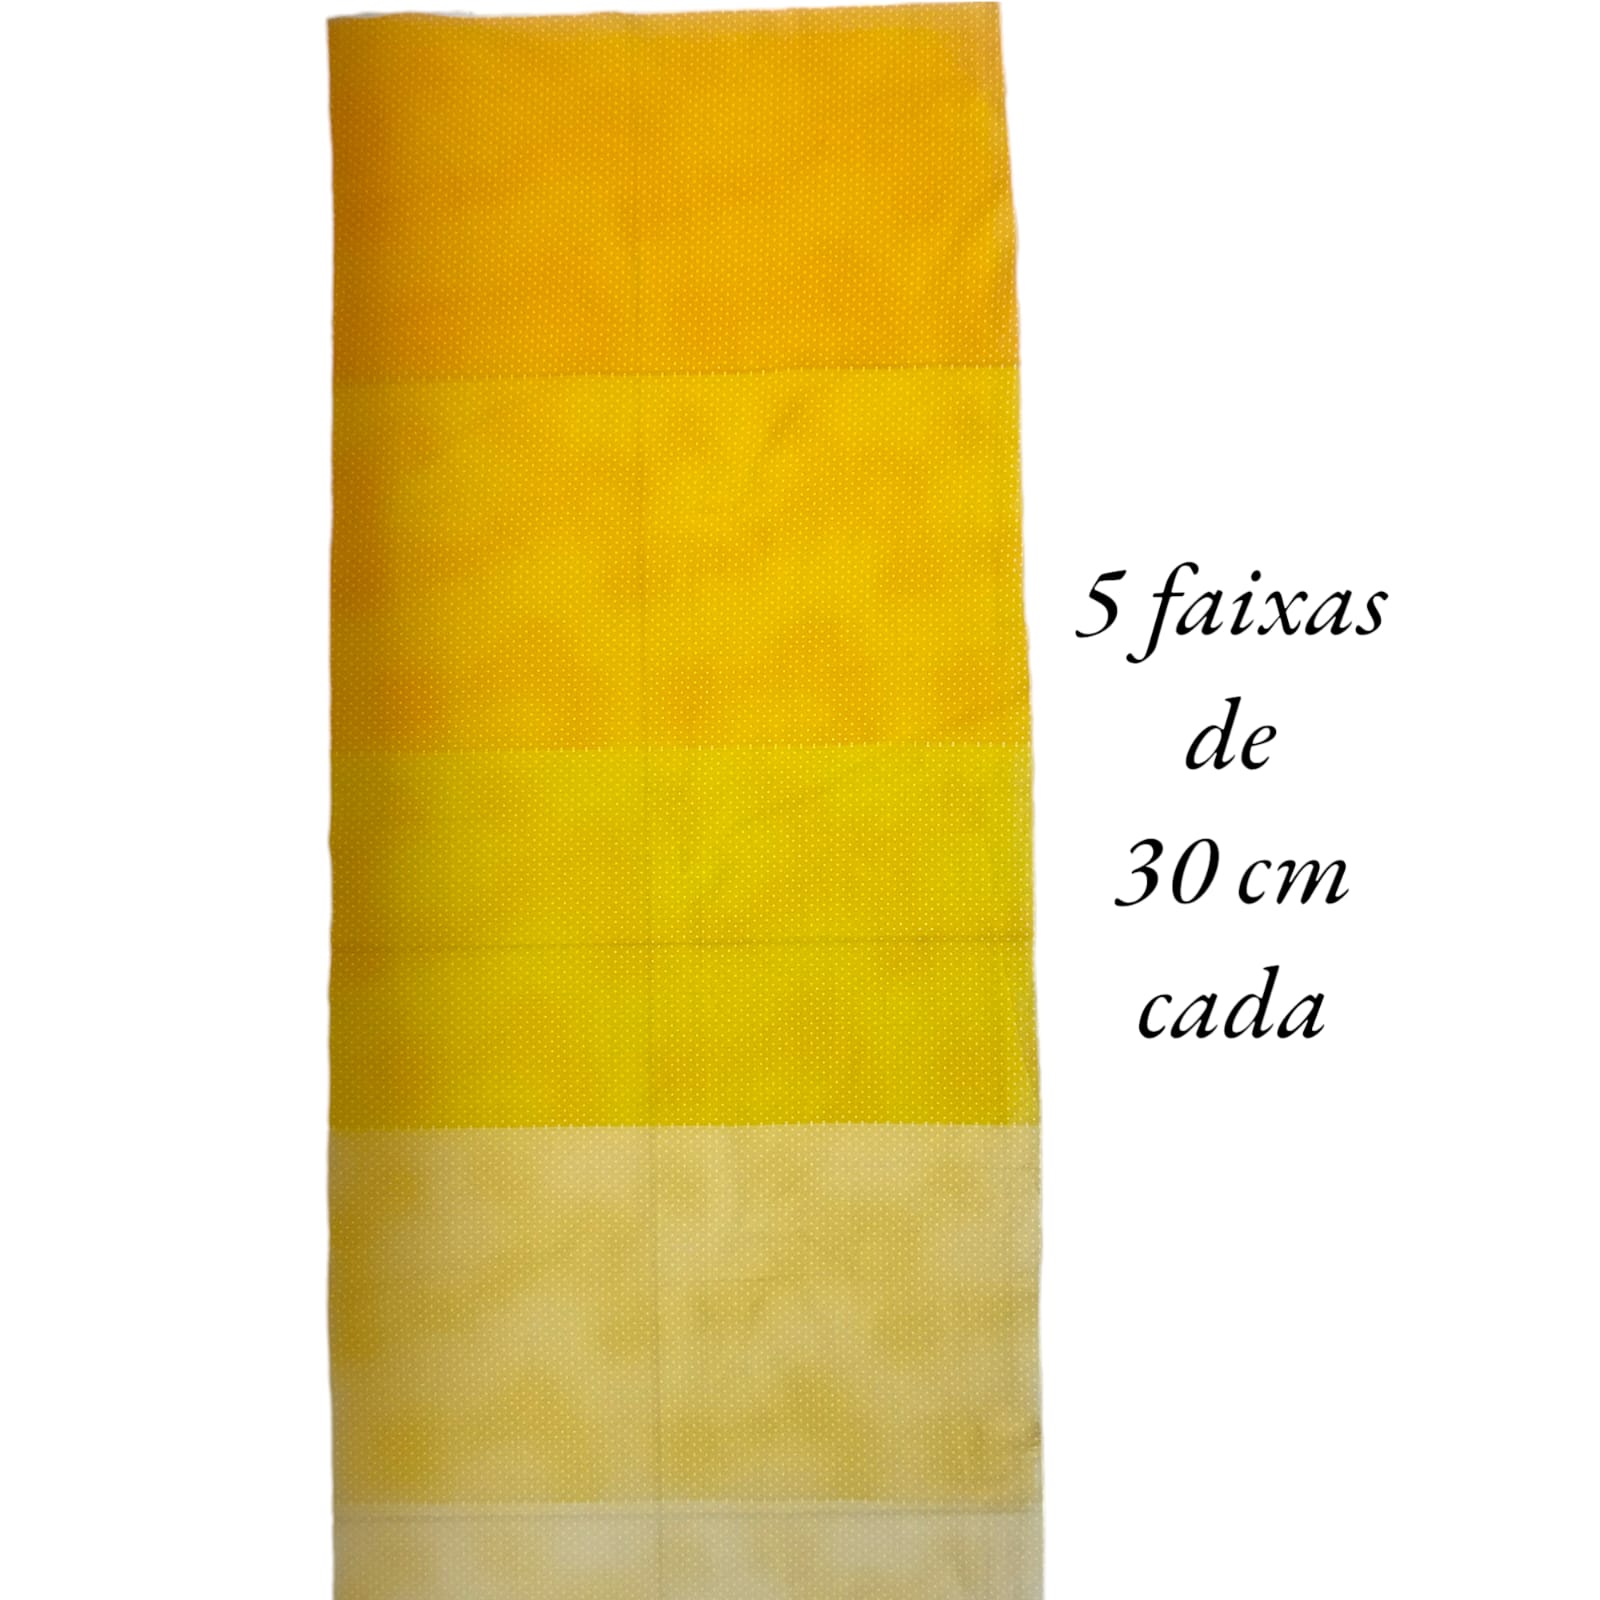 Tecido Tricoline digital - faixas de poa branco fd.amarelo degradê - Col. Basics for All - Fernando Maluhy  (50x1,50 cm)                             